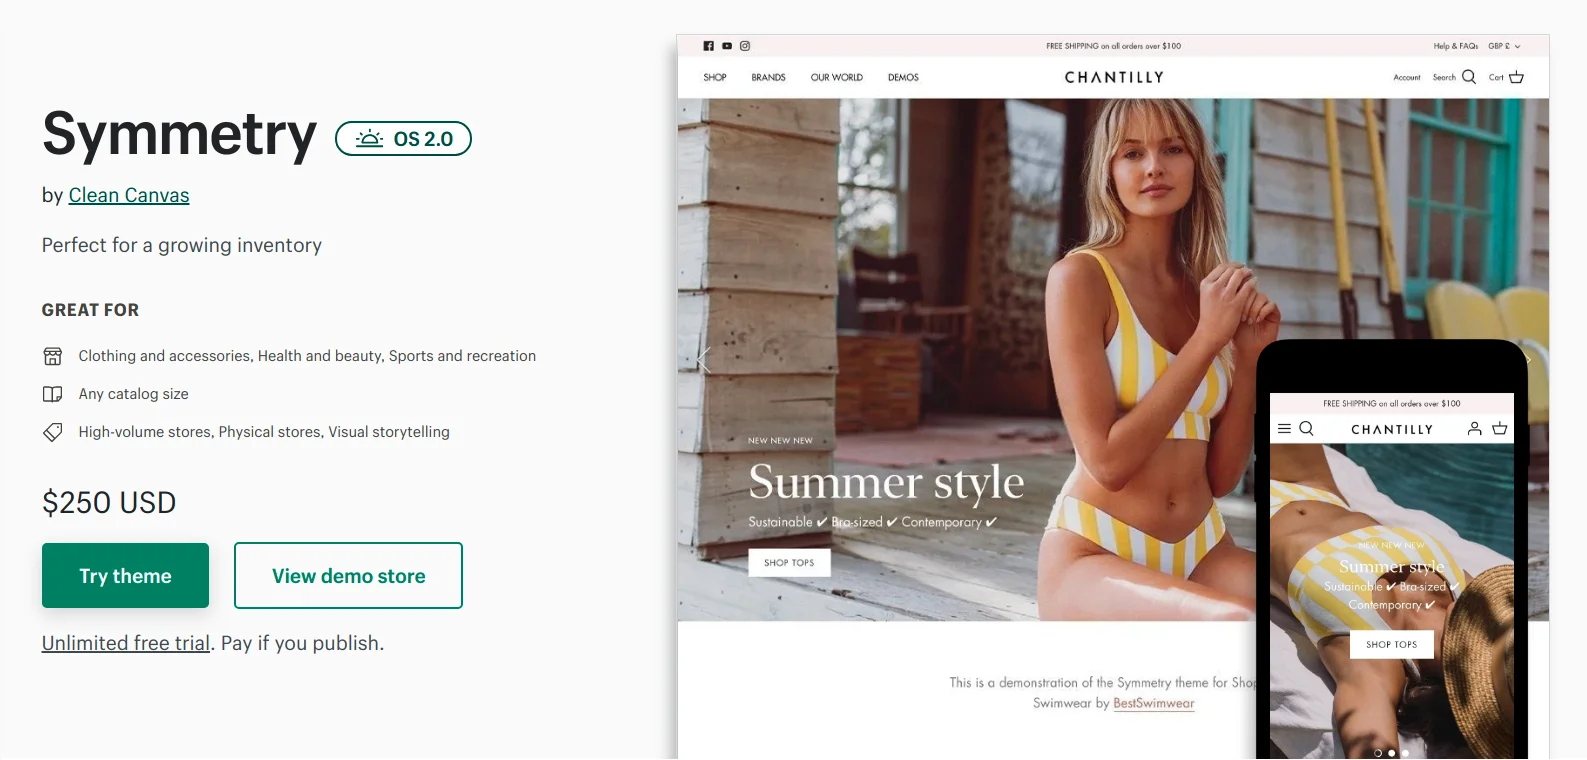 symmetry-online-store-2-shopify-theme